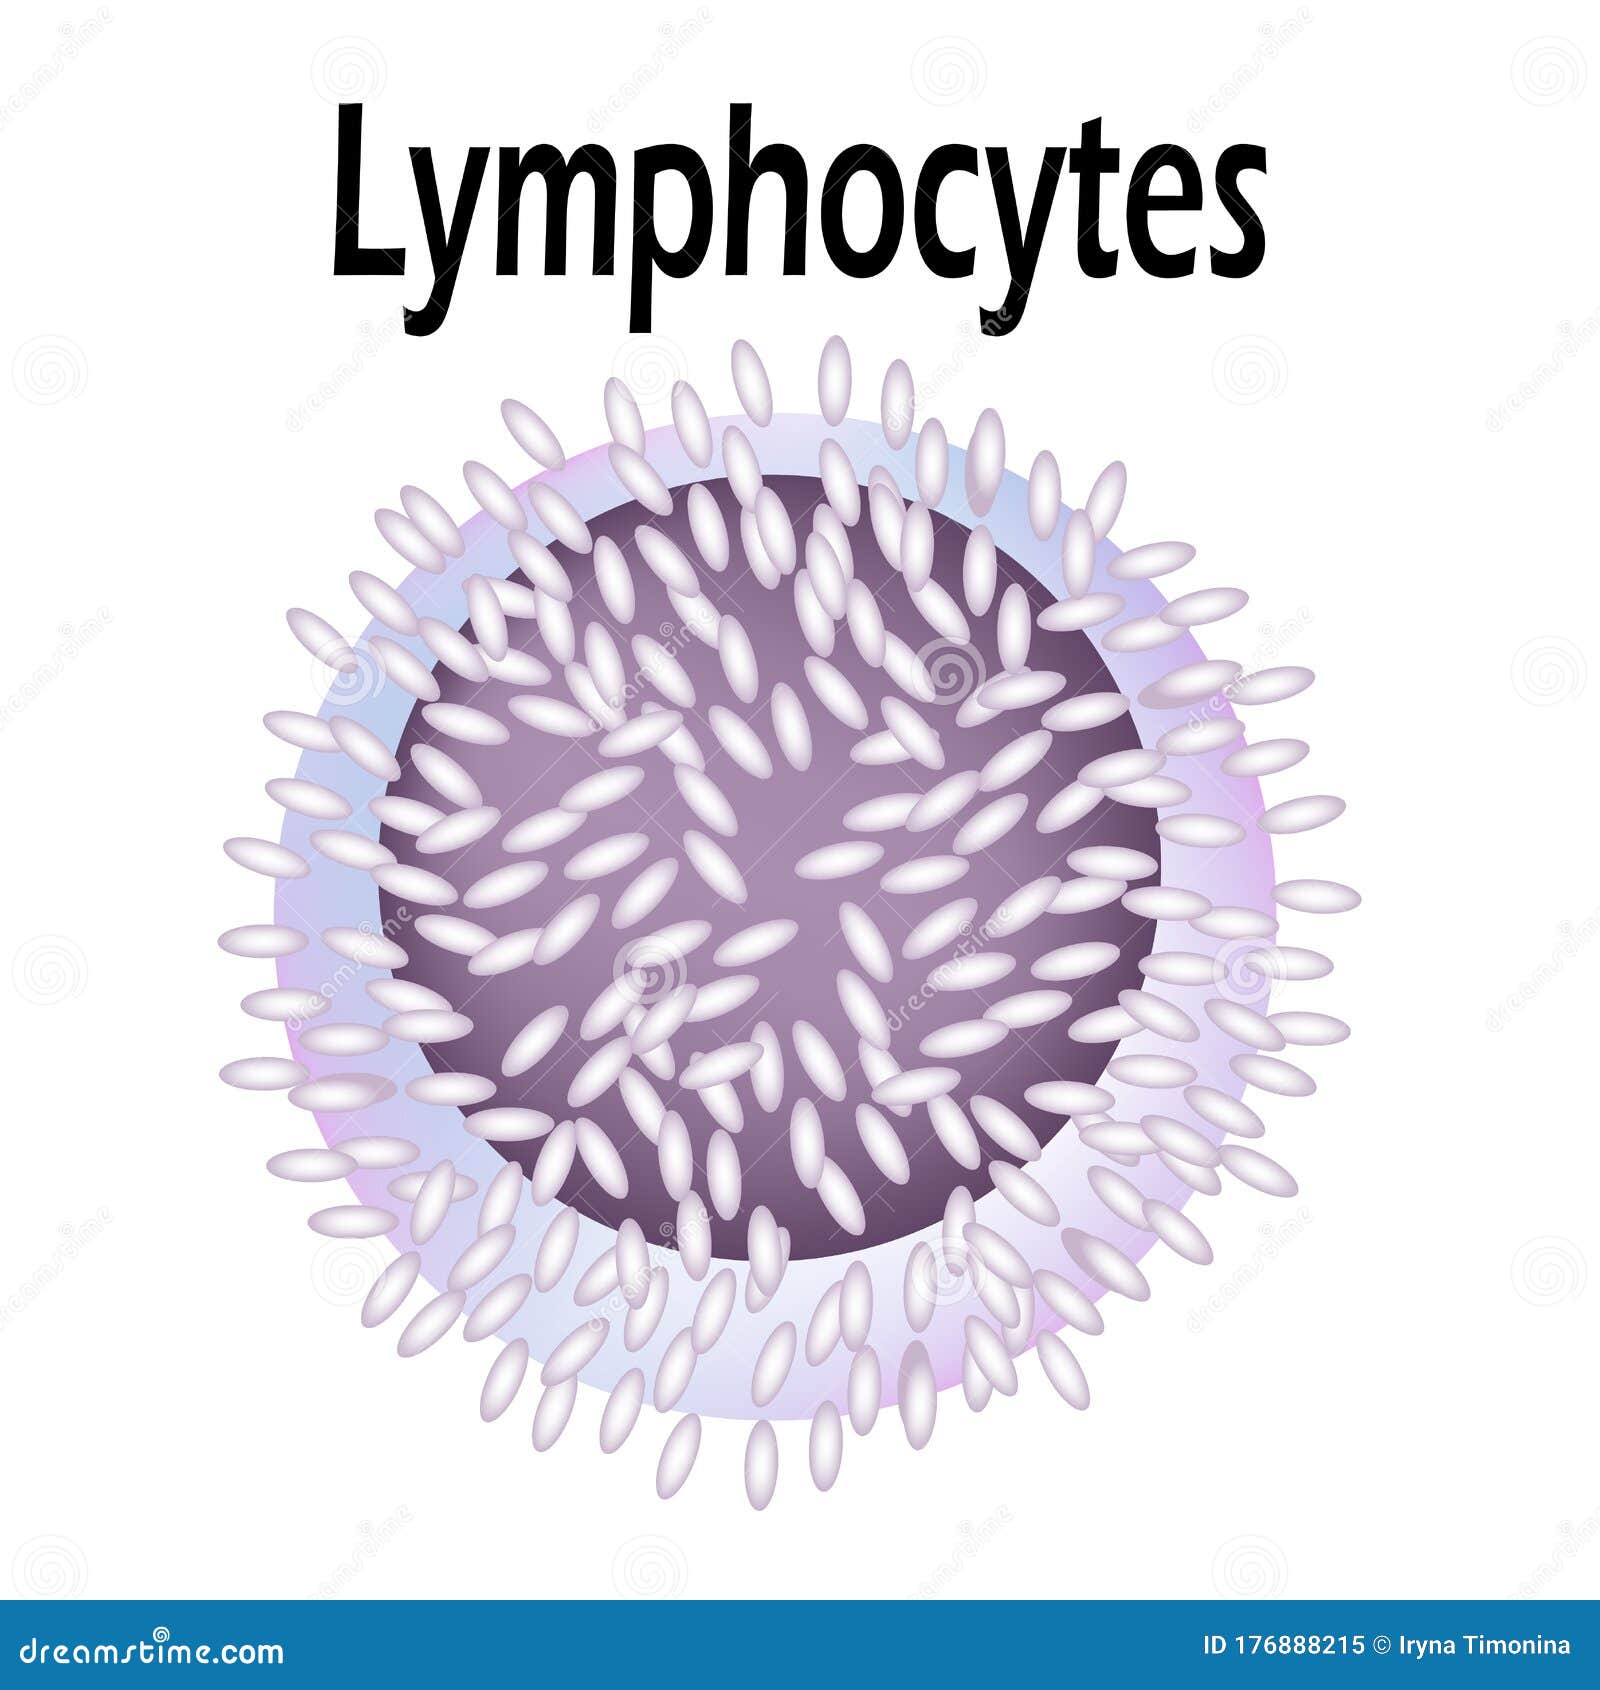 Lymphocytes Cell Diagram